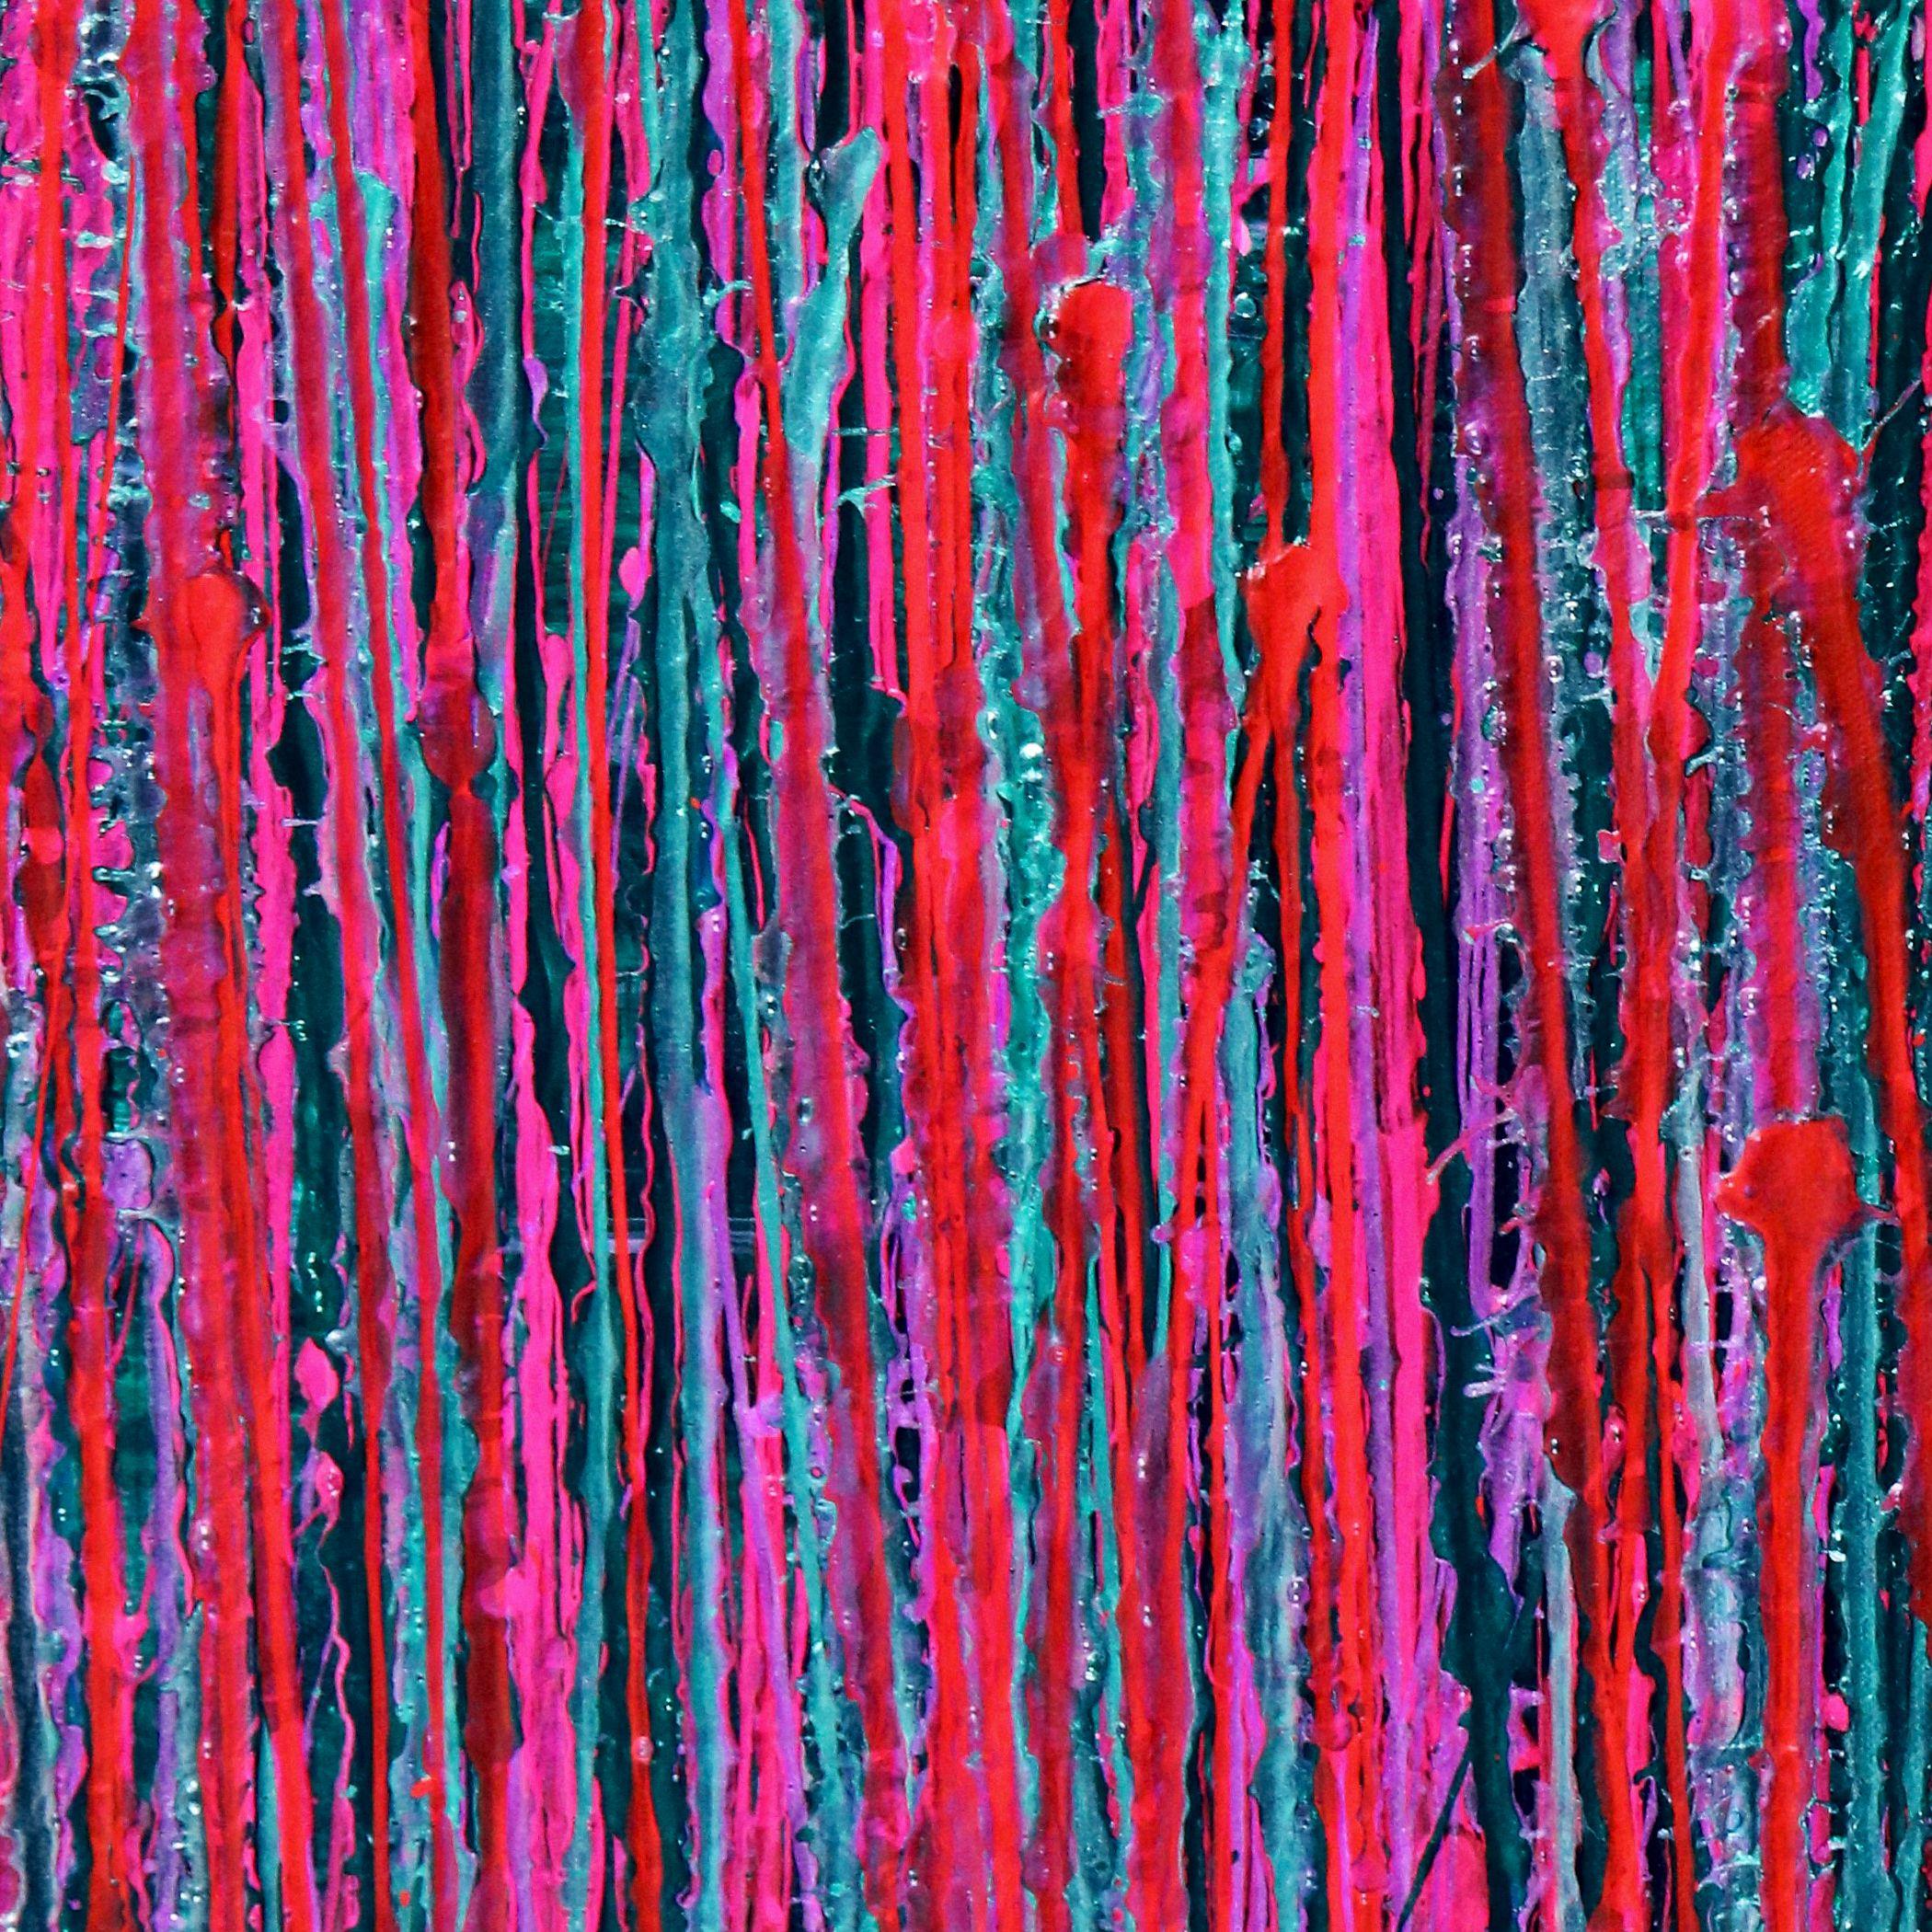 Lebendiges abstraktes Gemälde mit vielen Sprühstößen in leuchtendem Pink, Orange, Grün und schillernder Klarlackfarbe auf dunklem waldgrünem Hintergrund. Vorne signiert.    Ich lege ein Echtheitszertifikat bei, in dem die Materialien sowie das Datum